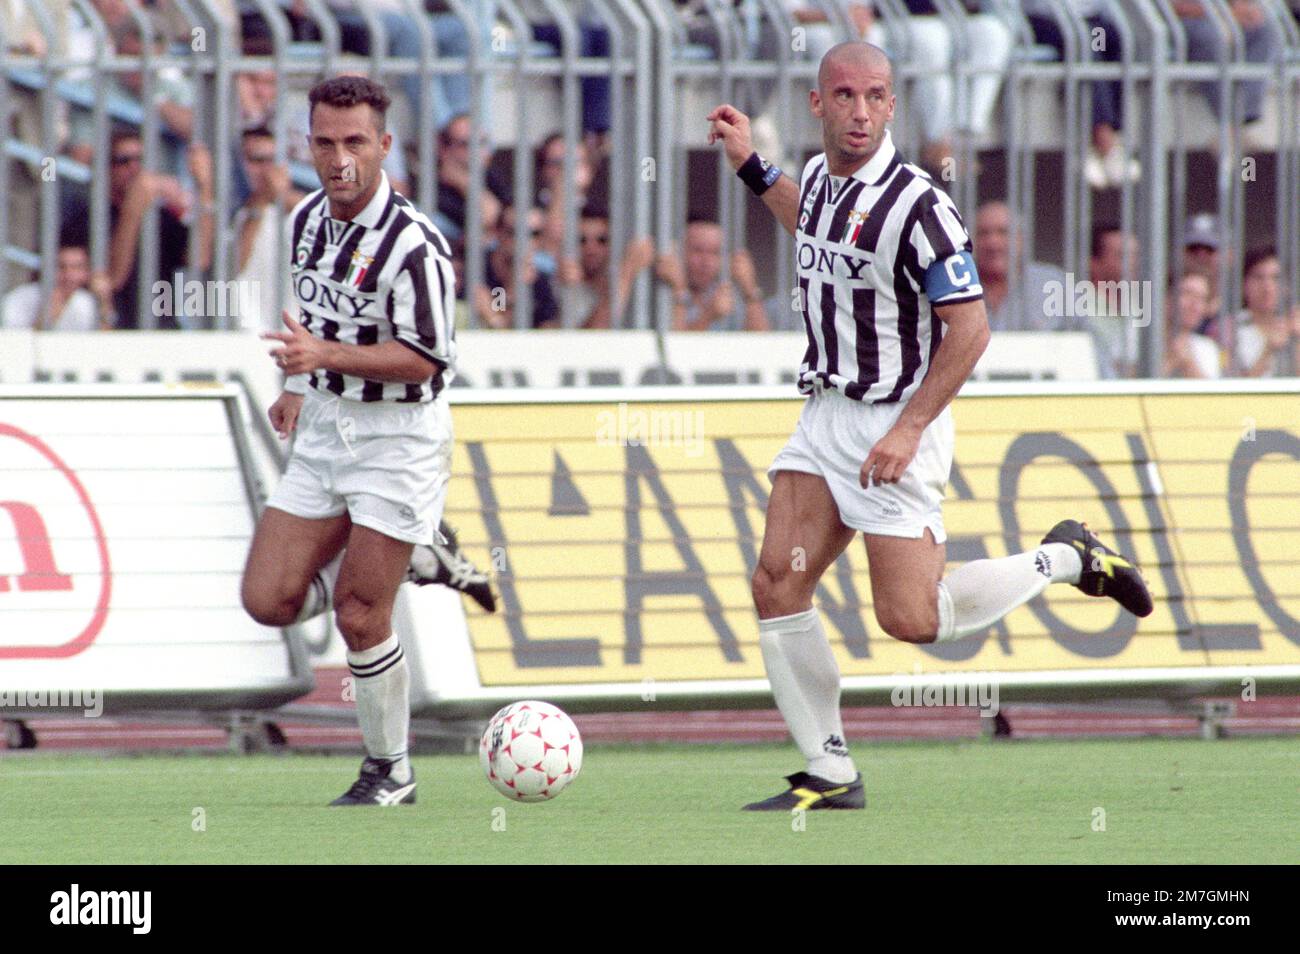 Italia, Torino 1994-1995-1996: I giocatori della Juventus FC Gianluca Vialli e Angelo di Livio durante la Serie A 1995-96 Serie A Football Championship match Foto Stock